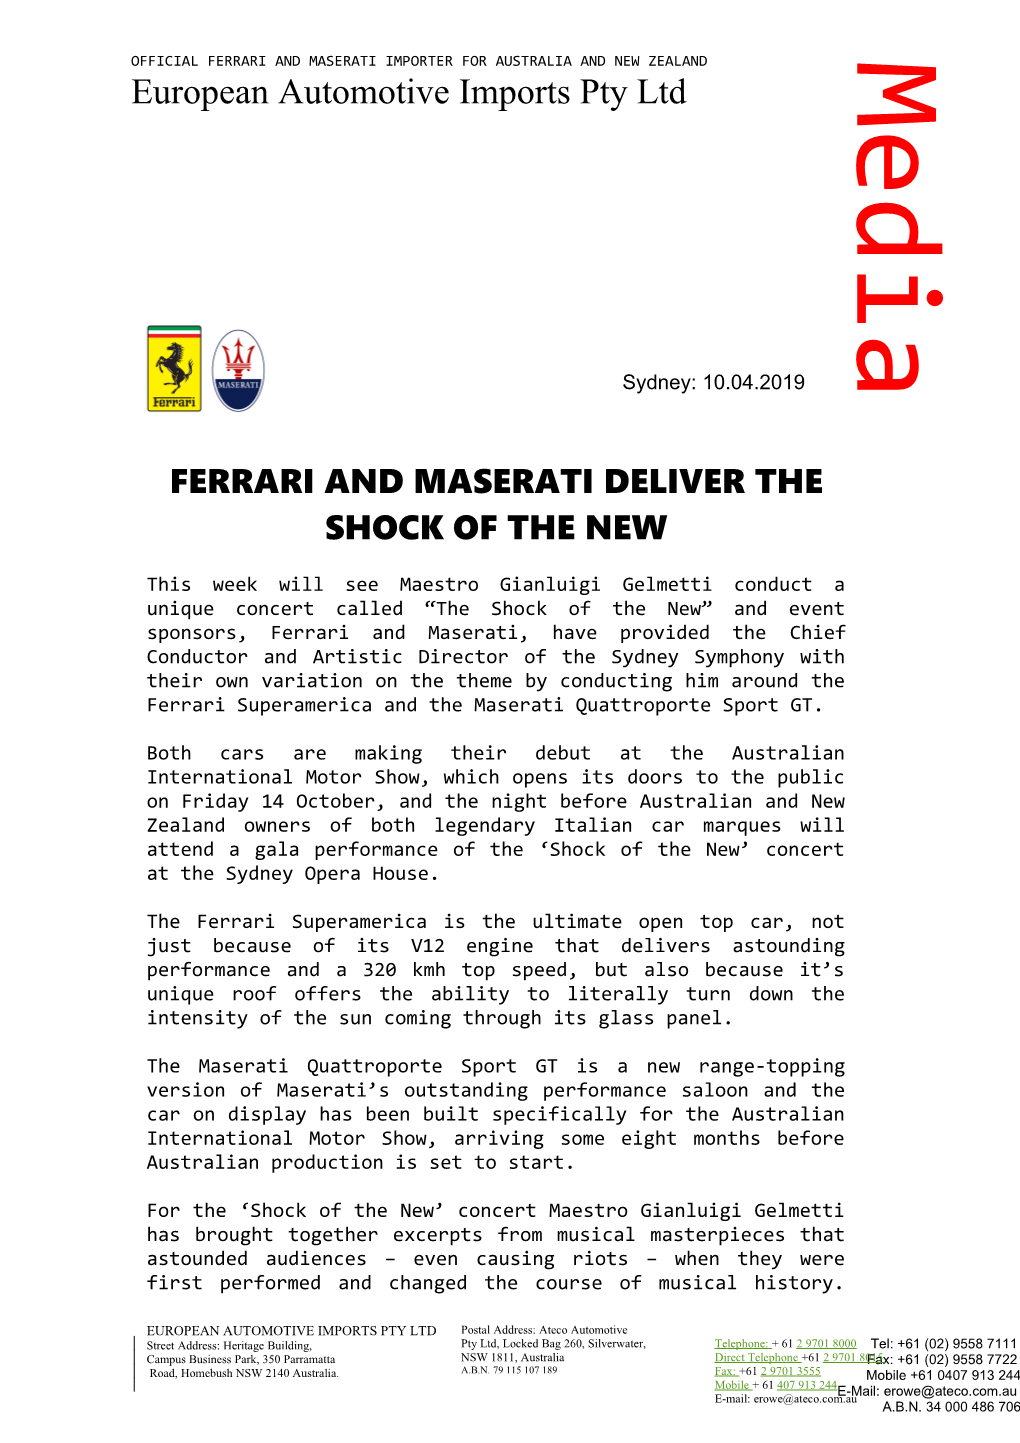 Ferrari and Maserati Deliver the Shock of the New